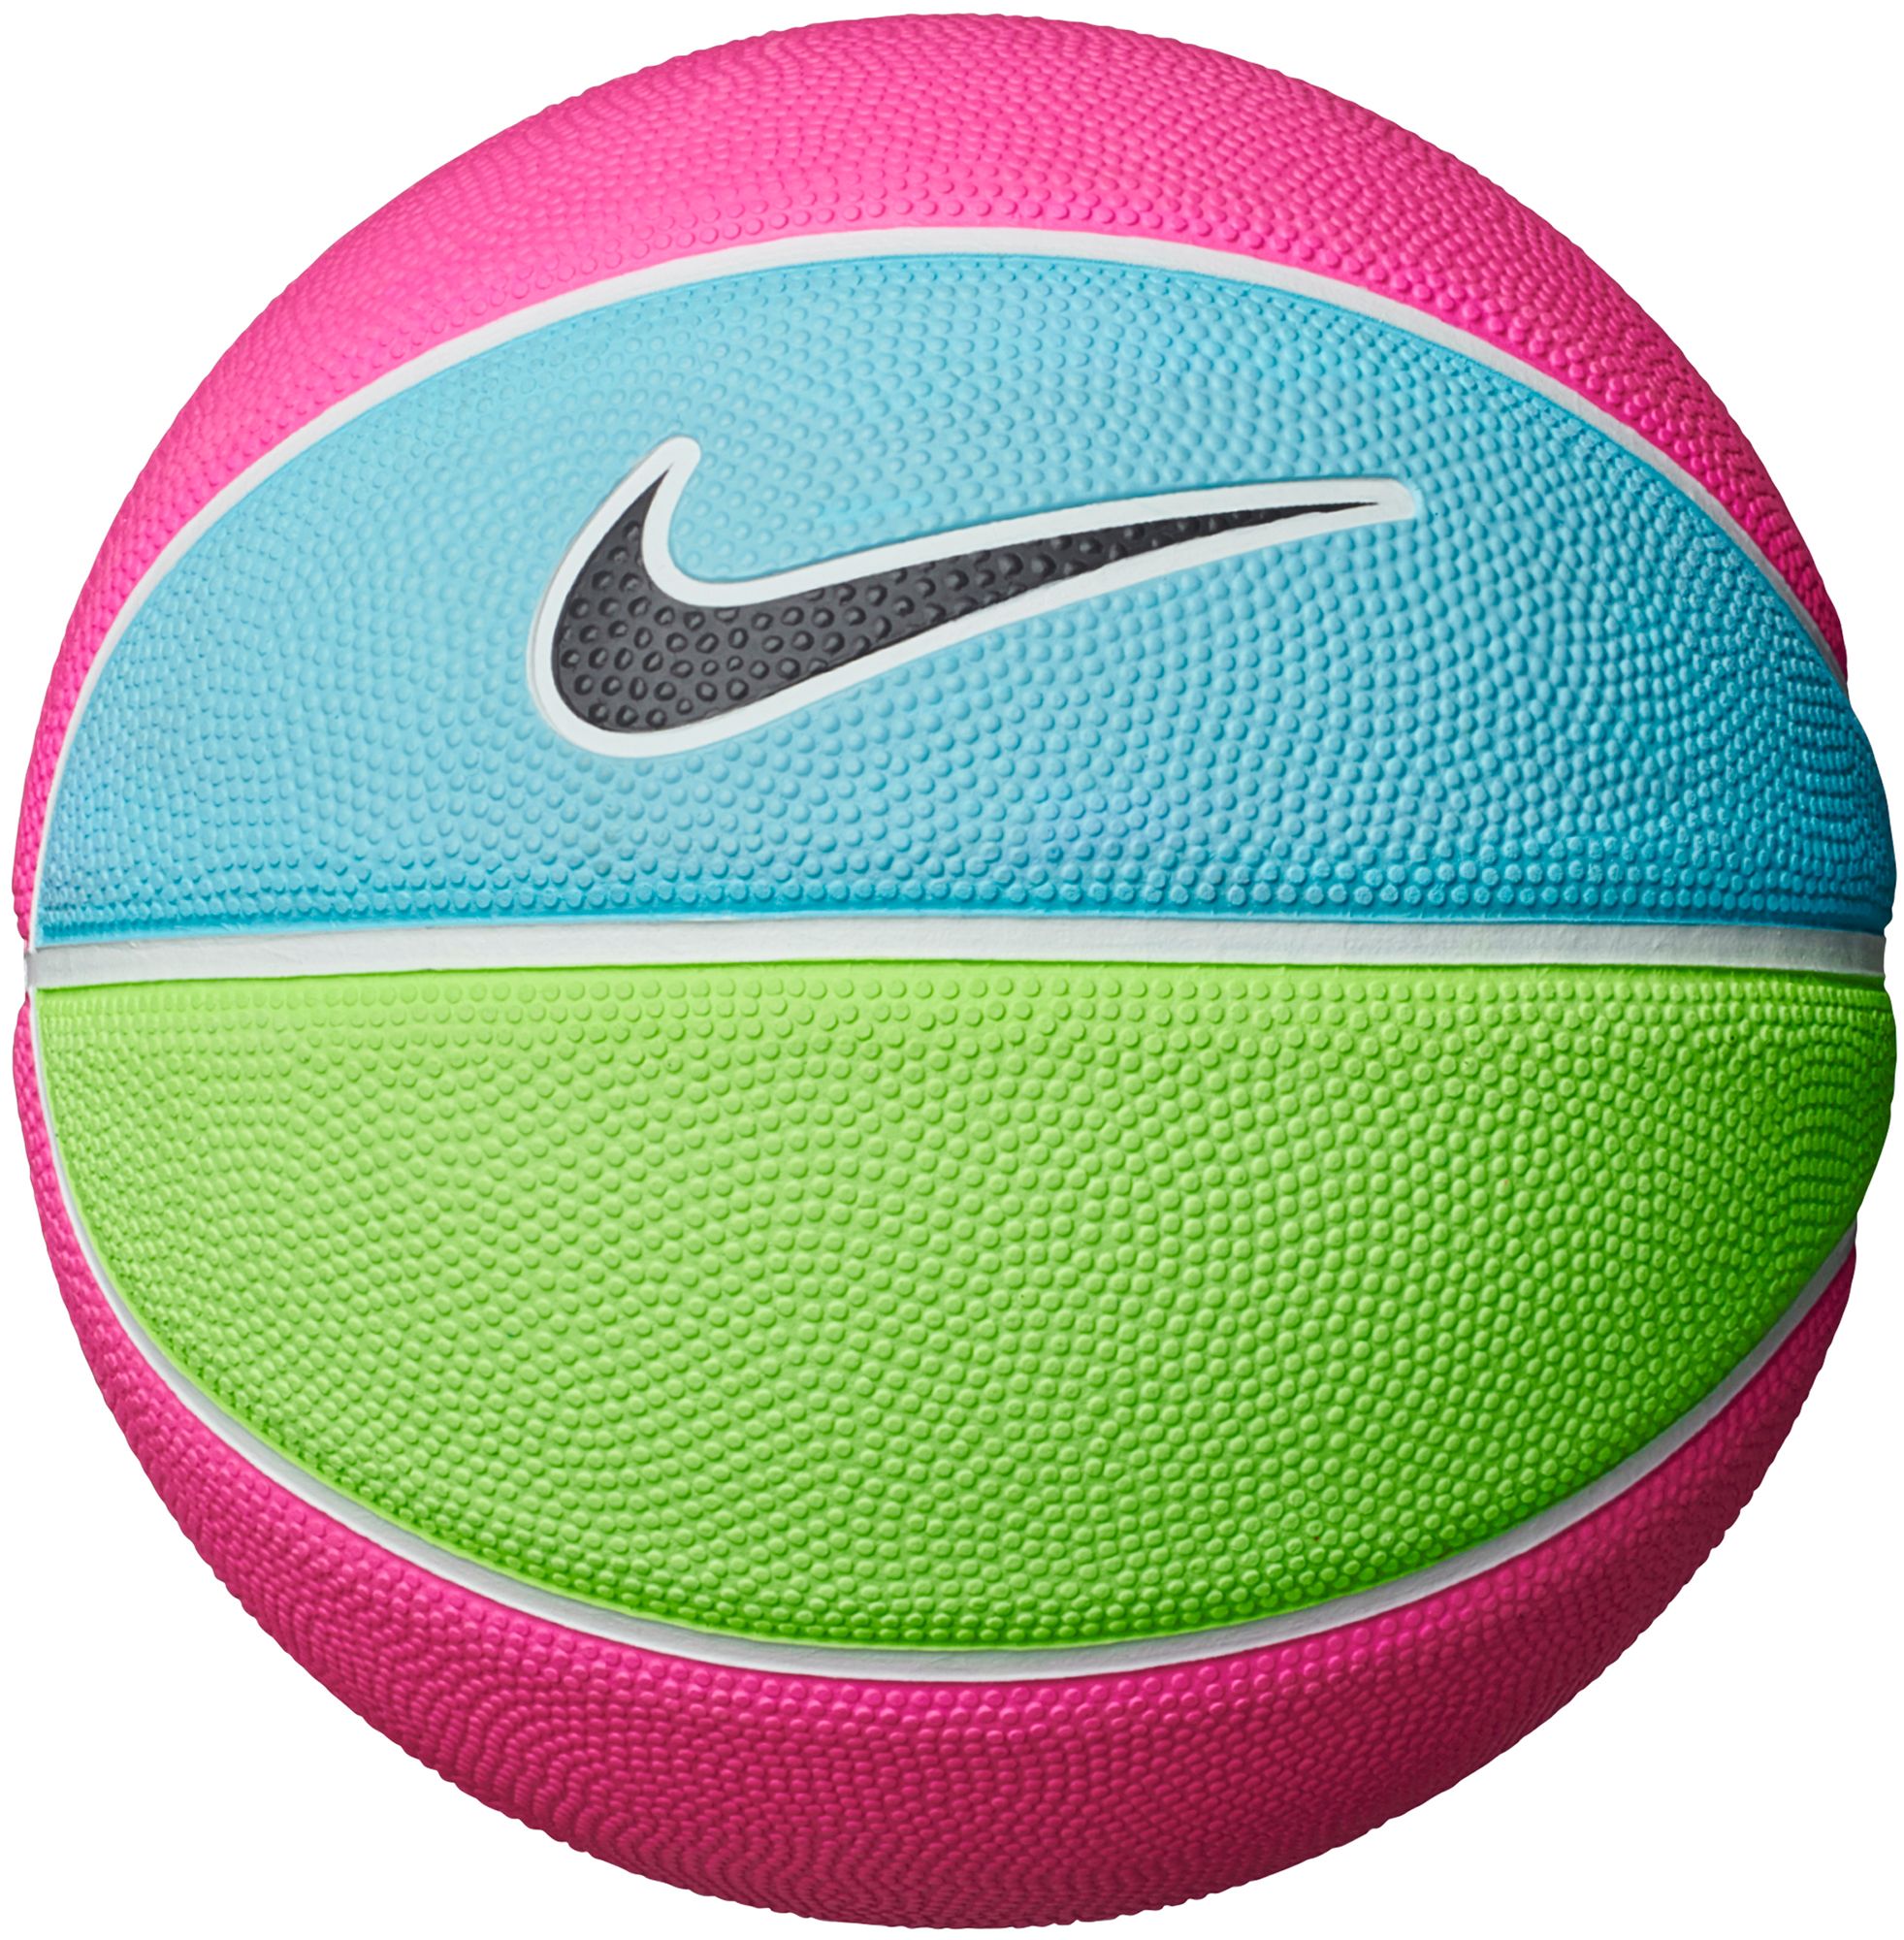 Basketballs | Best Price Guarantee at DICK'S